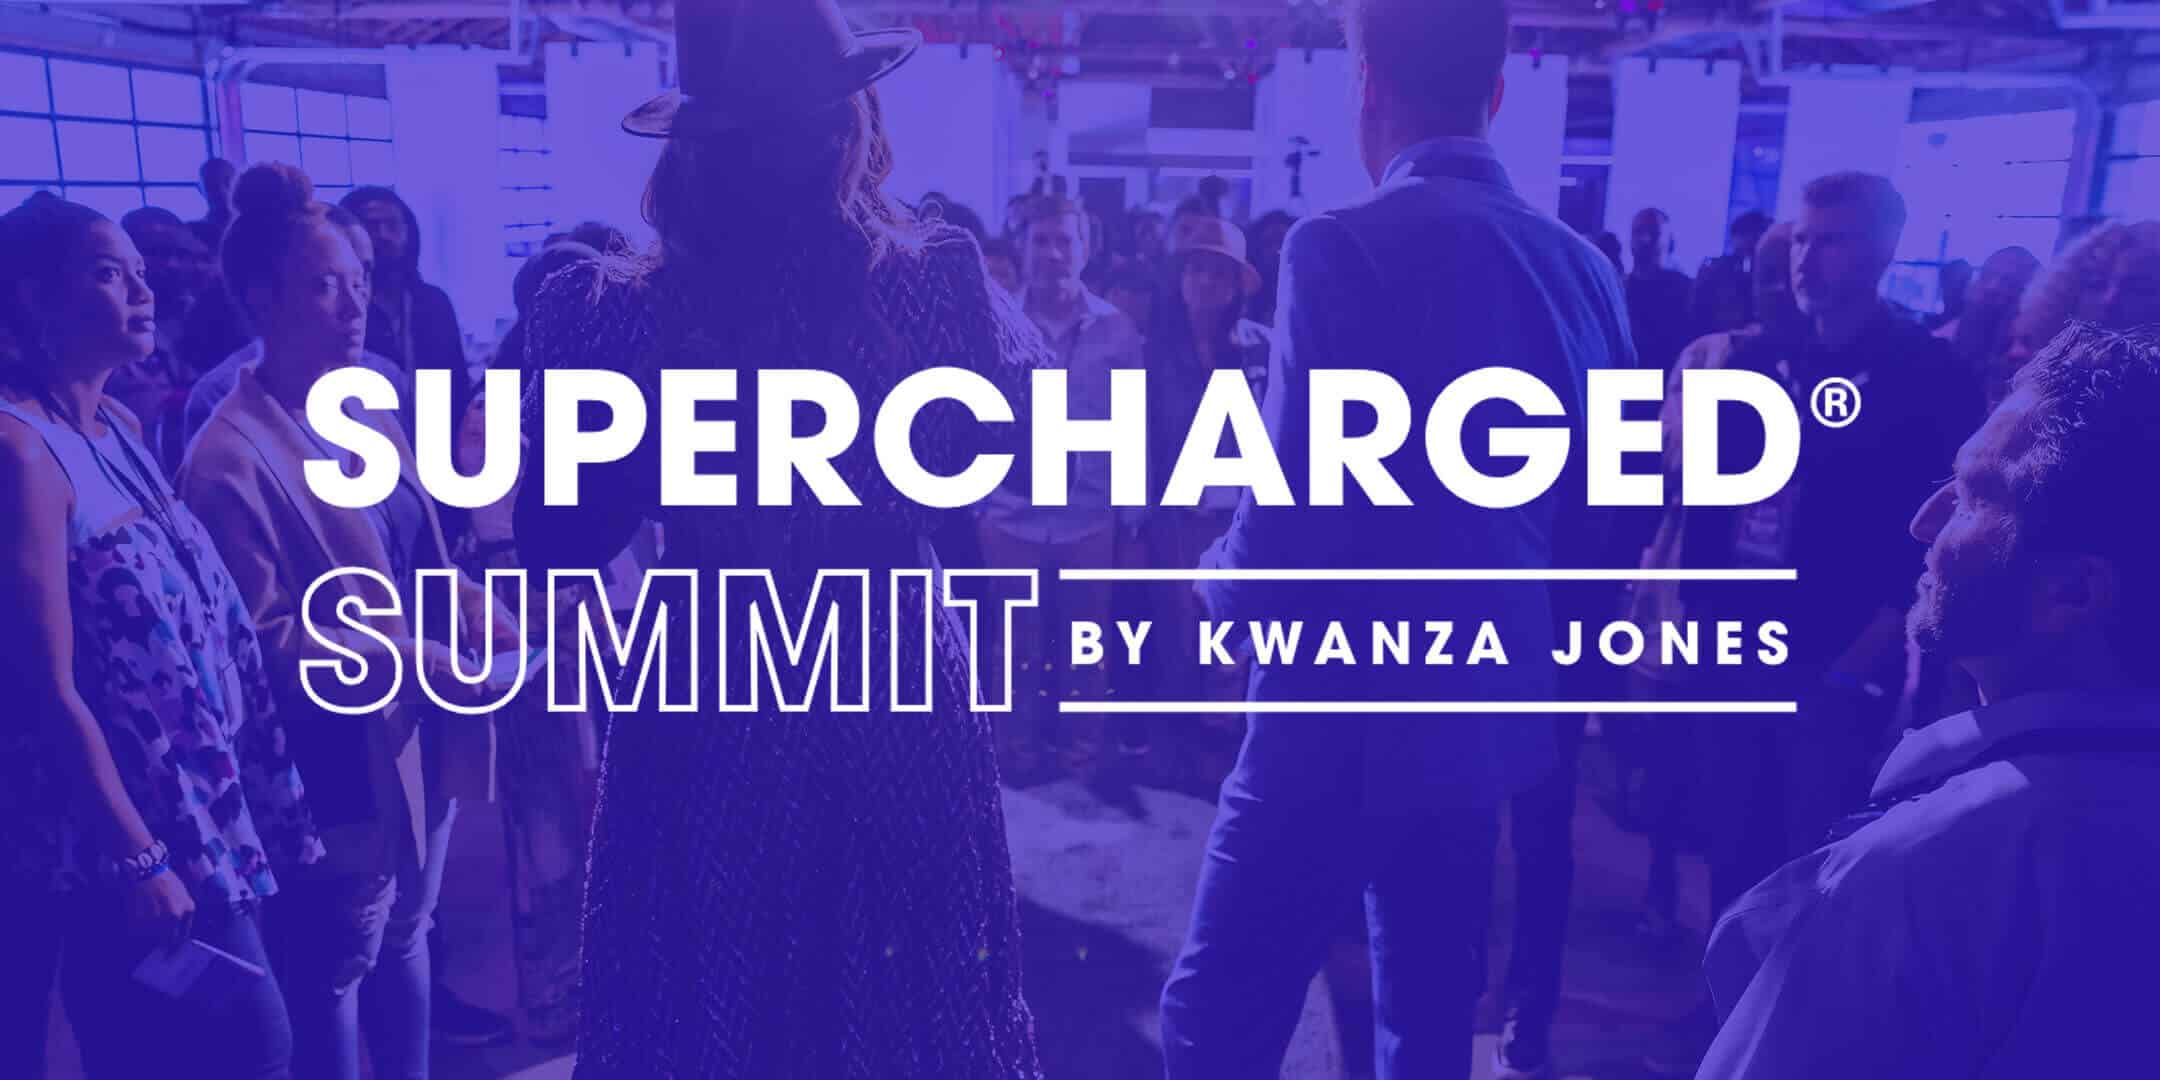 SUPERCHARGED Summit by Kwanza Jones